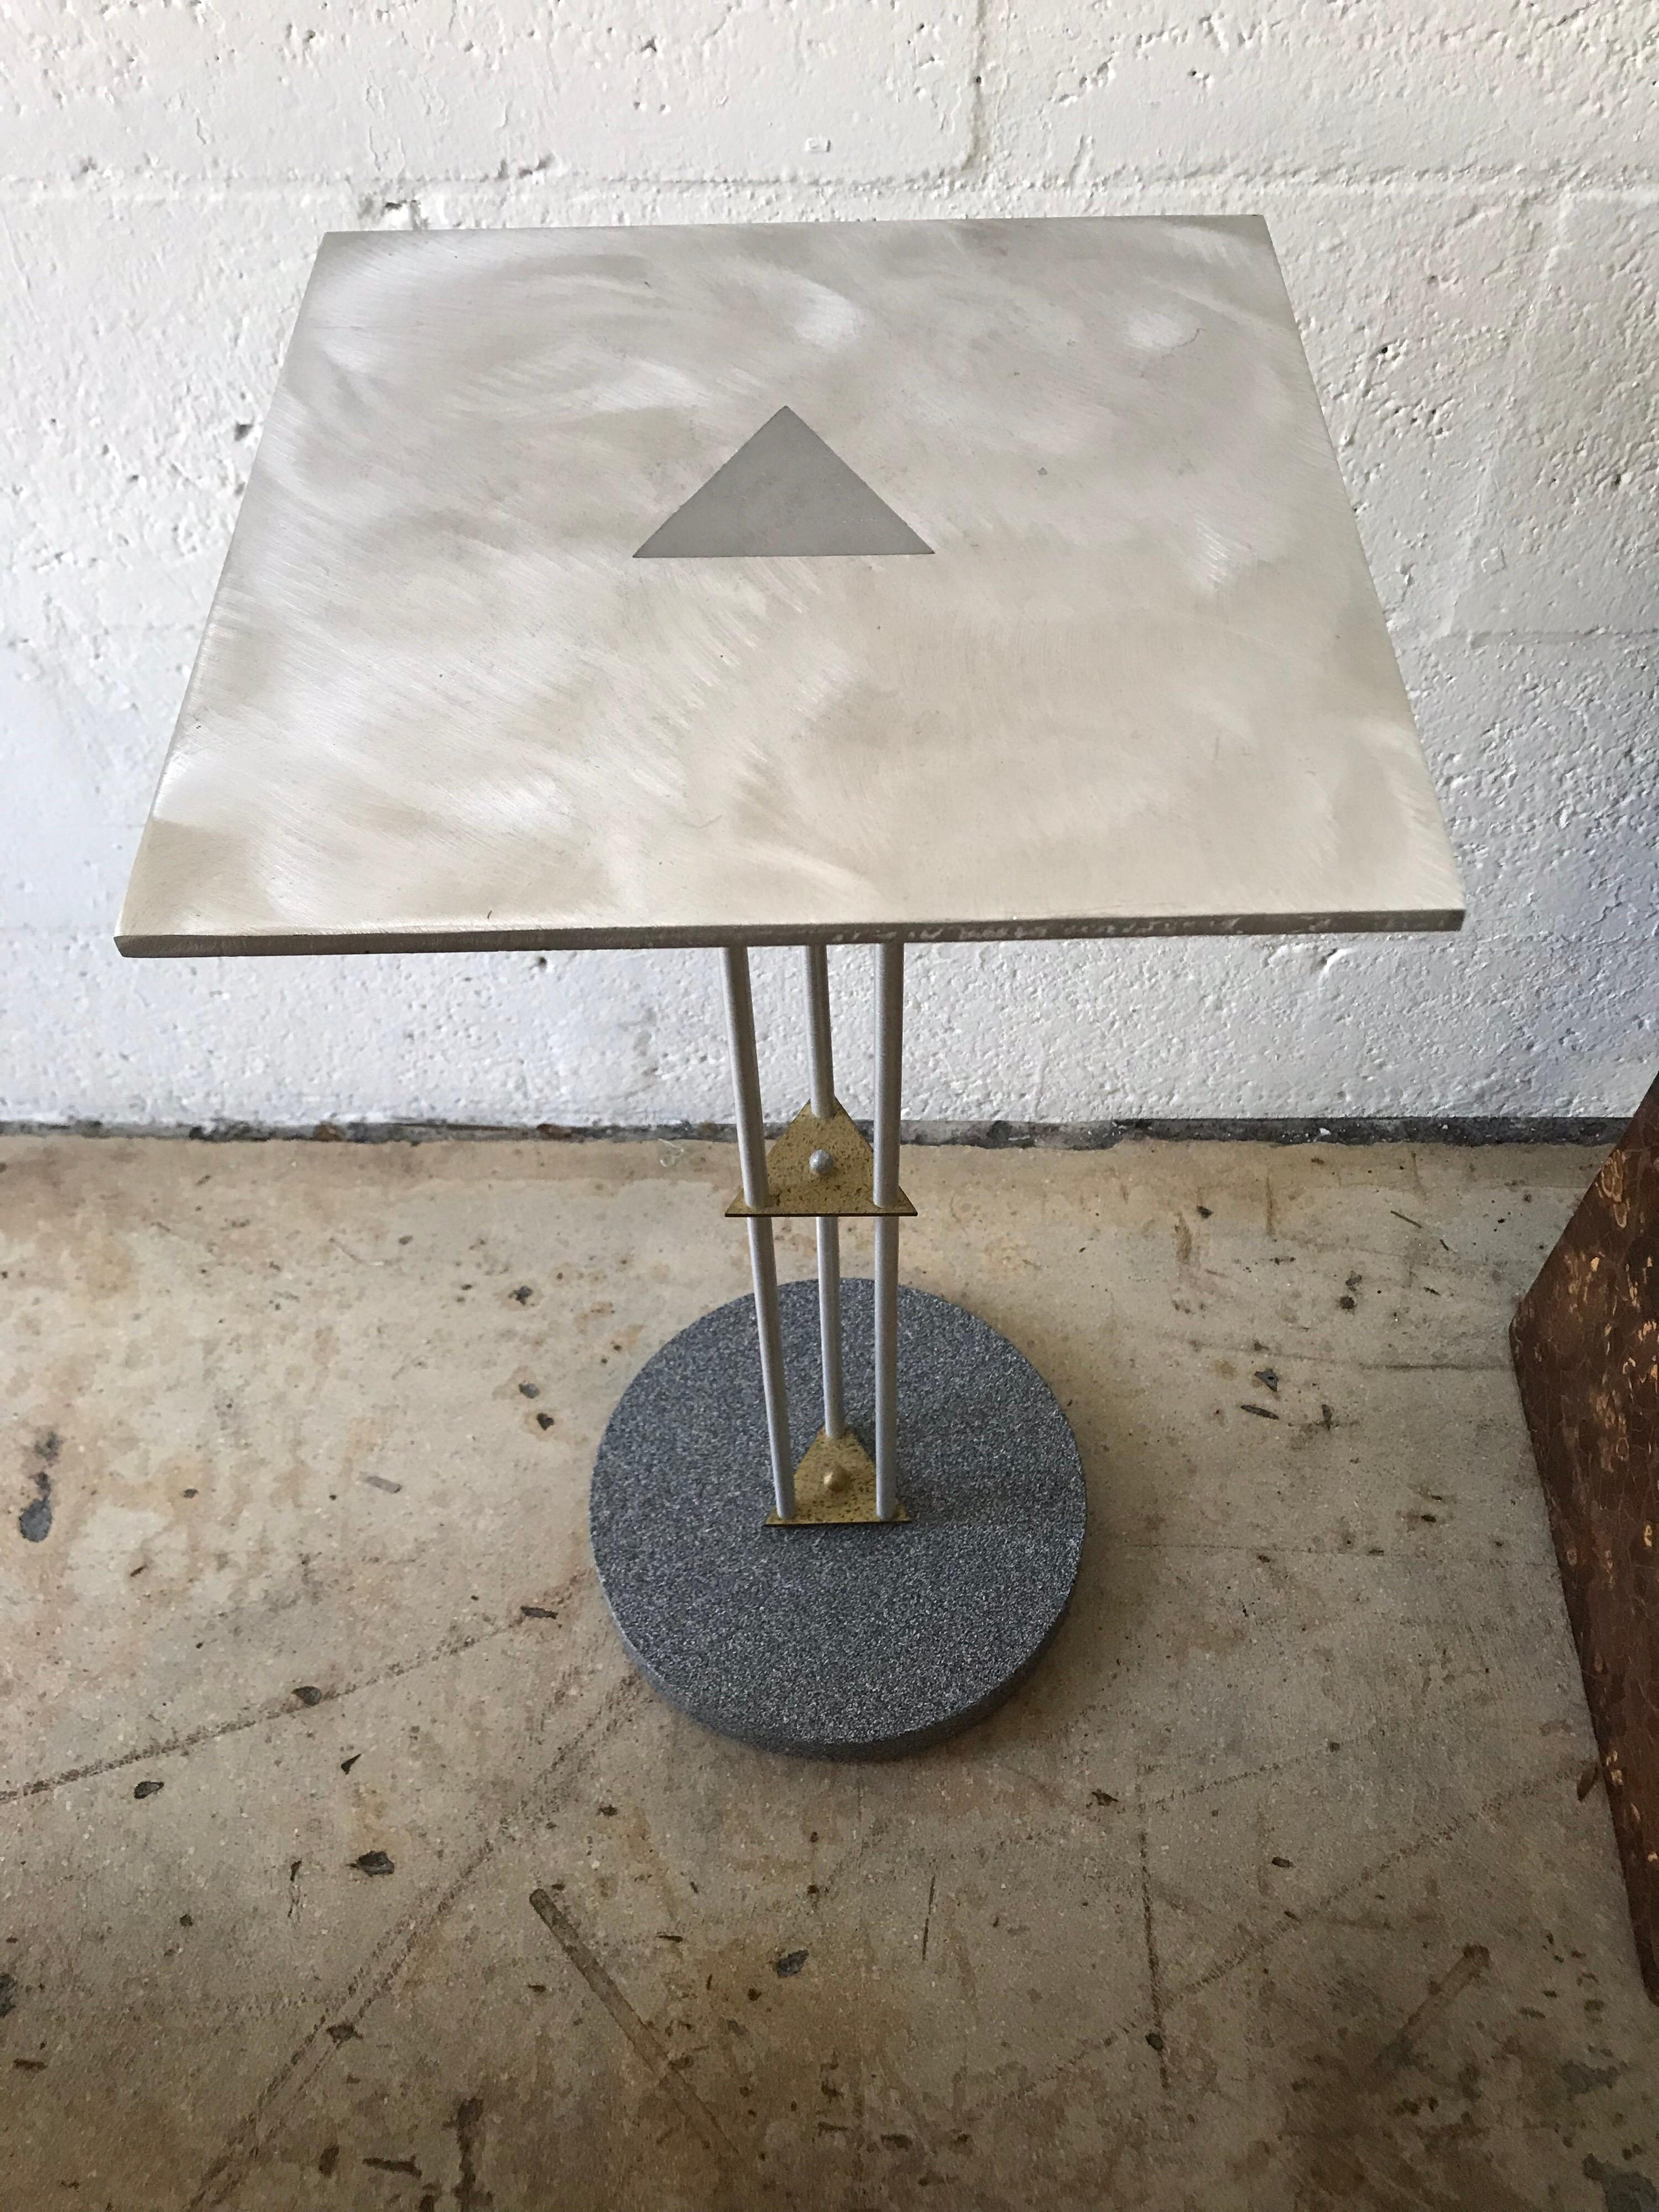 Table d'appoint pour téléphone de style postmoderne Memphis, en acier et laiton, avec une base en granit trompée.